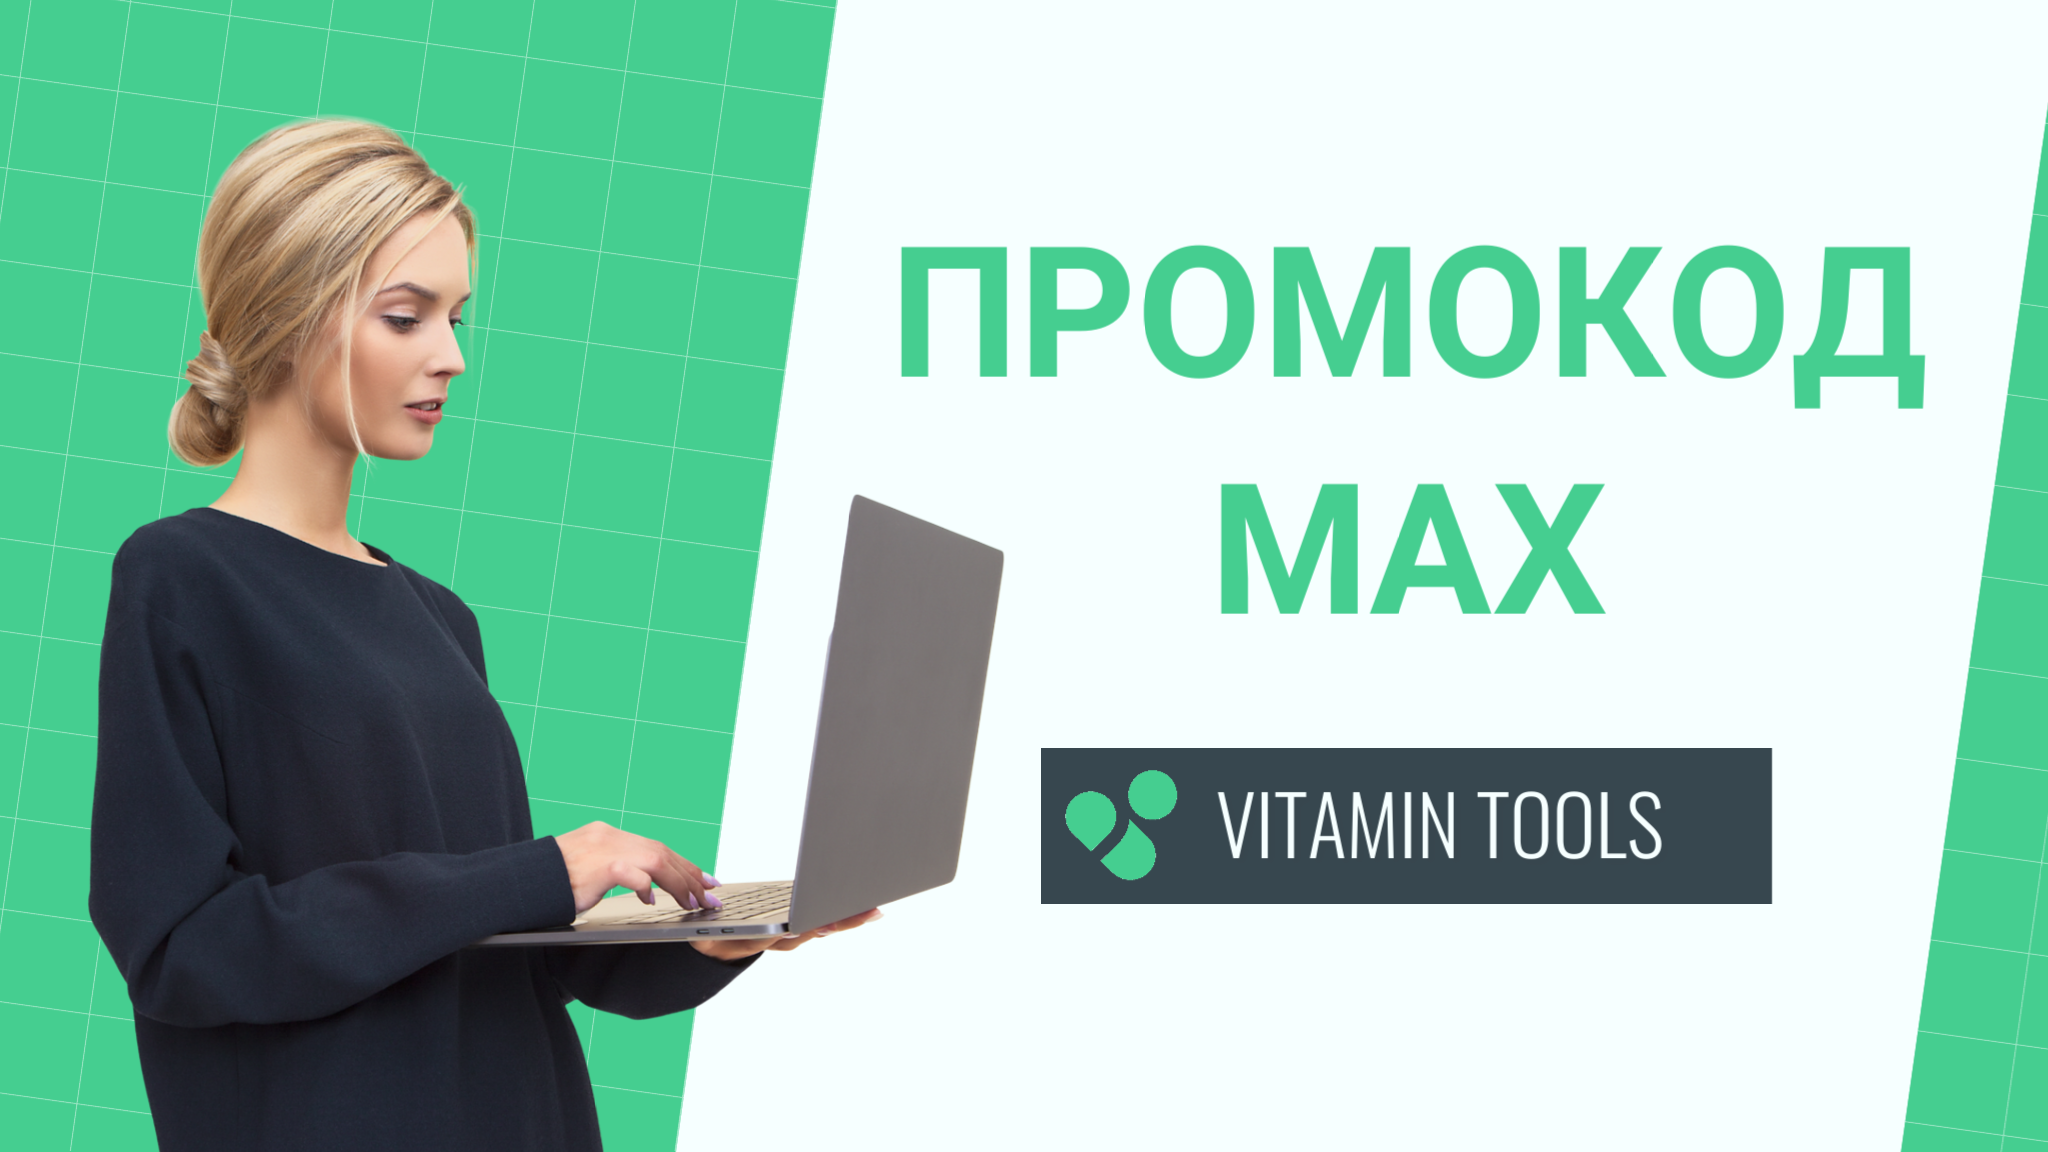 Vitamin Tools - вводи промокод MAX, чтобы получить максимум бонусов